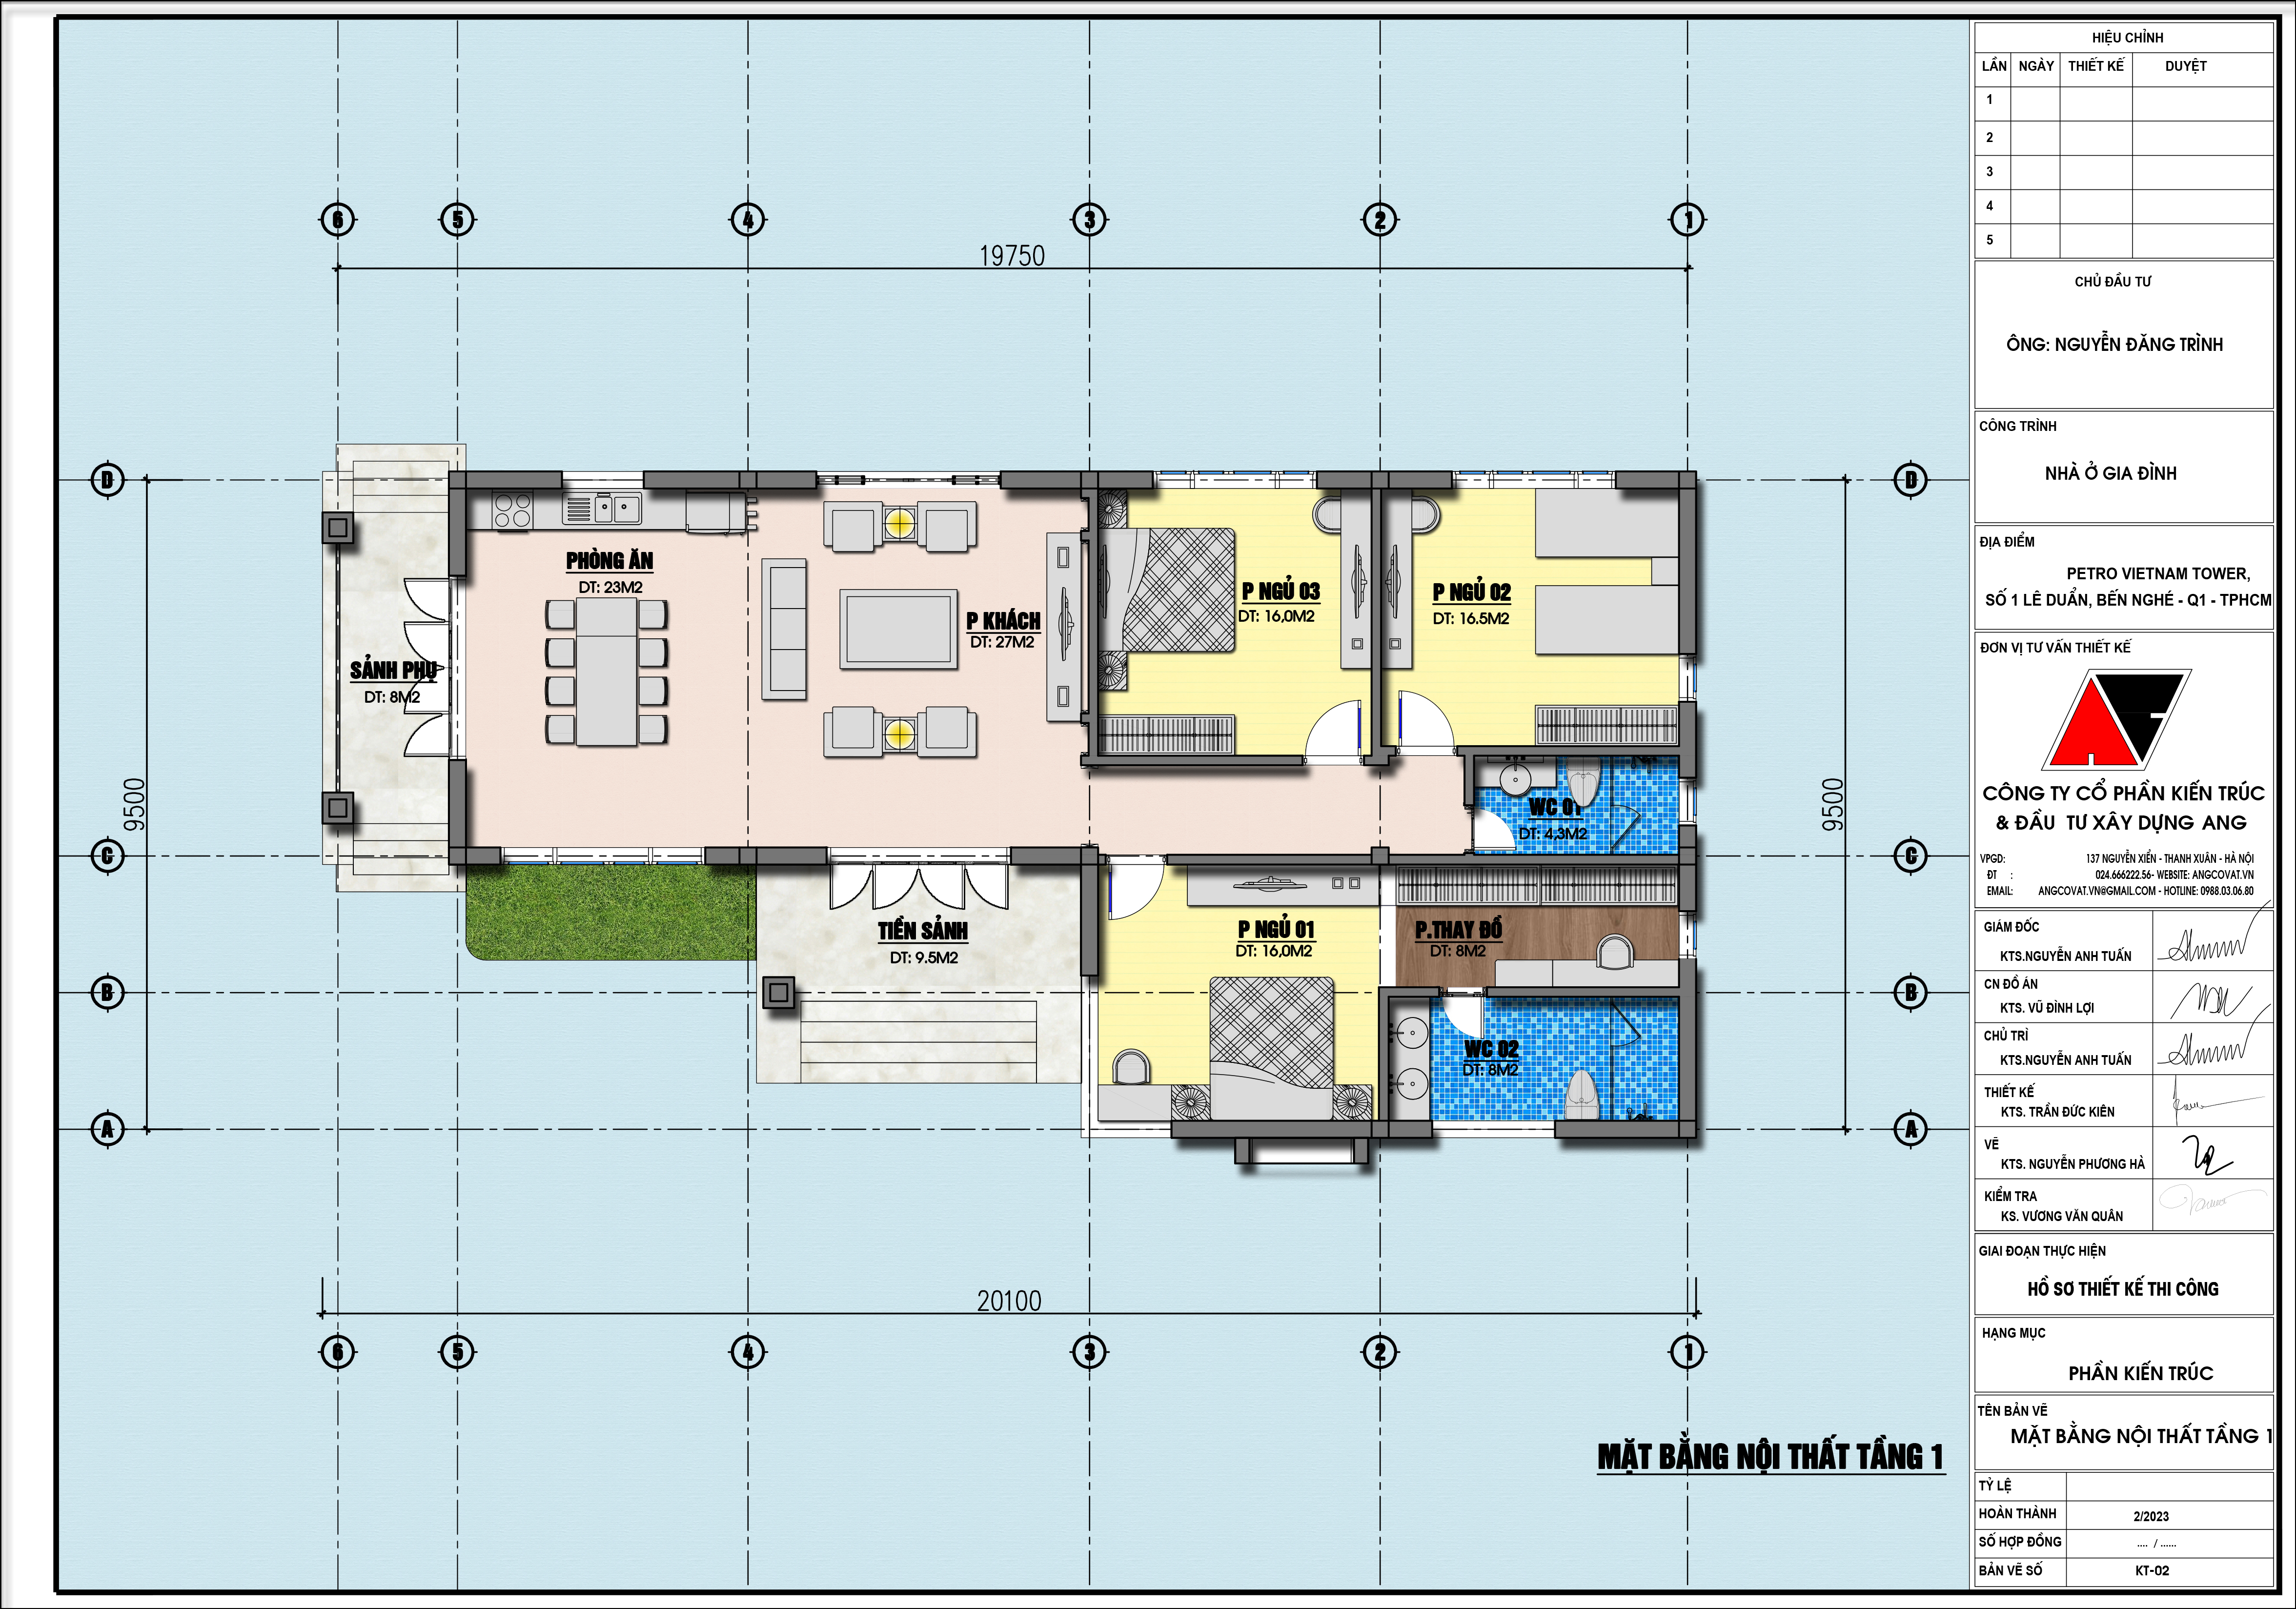 mẫu nhà 1 tầng 3 phòng ngủ hiện đại diện tích 160m2